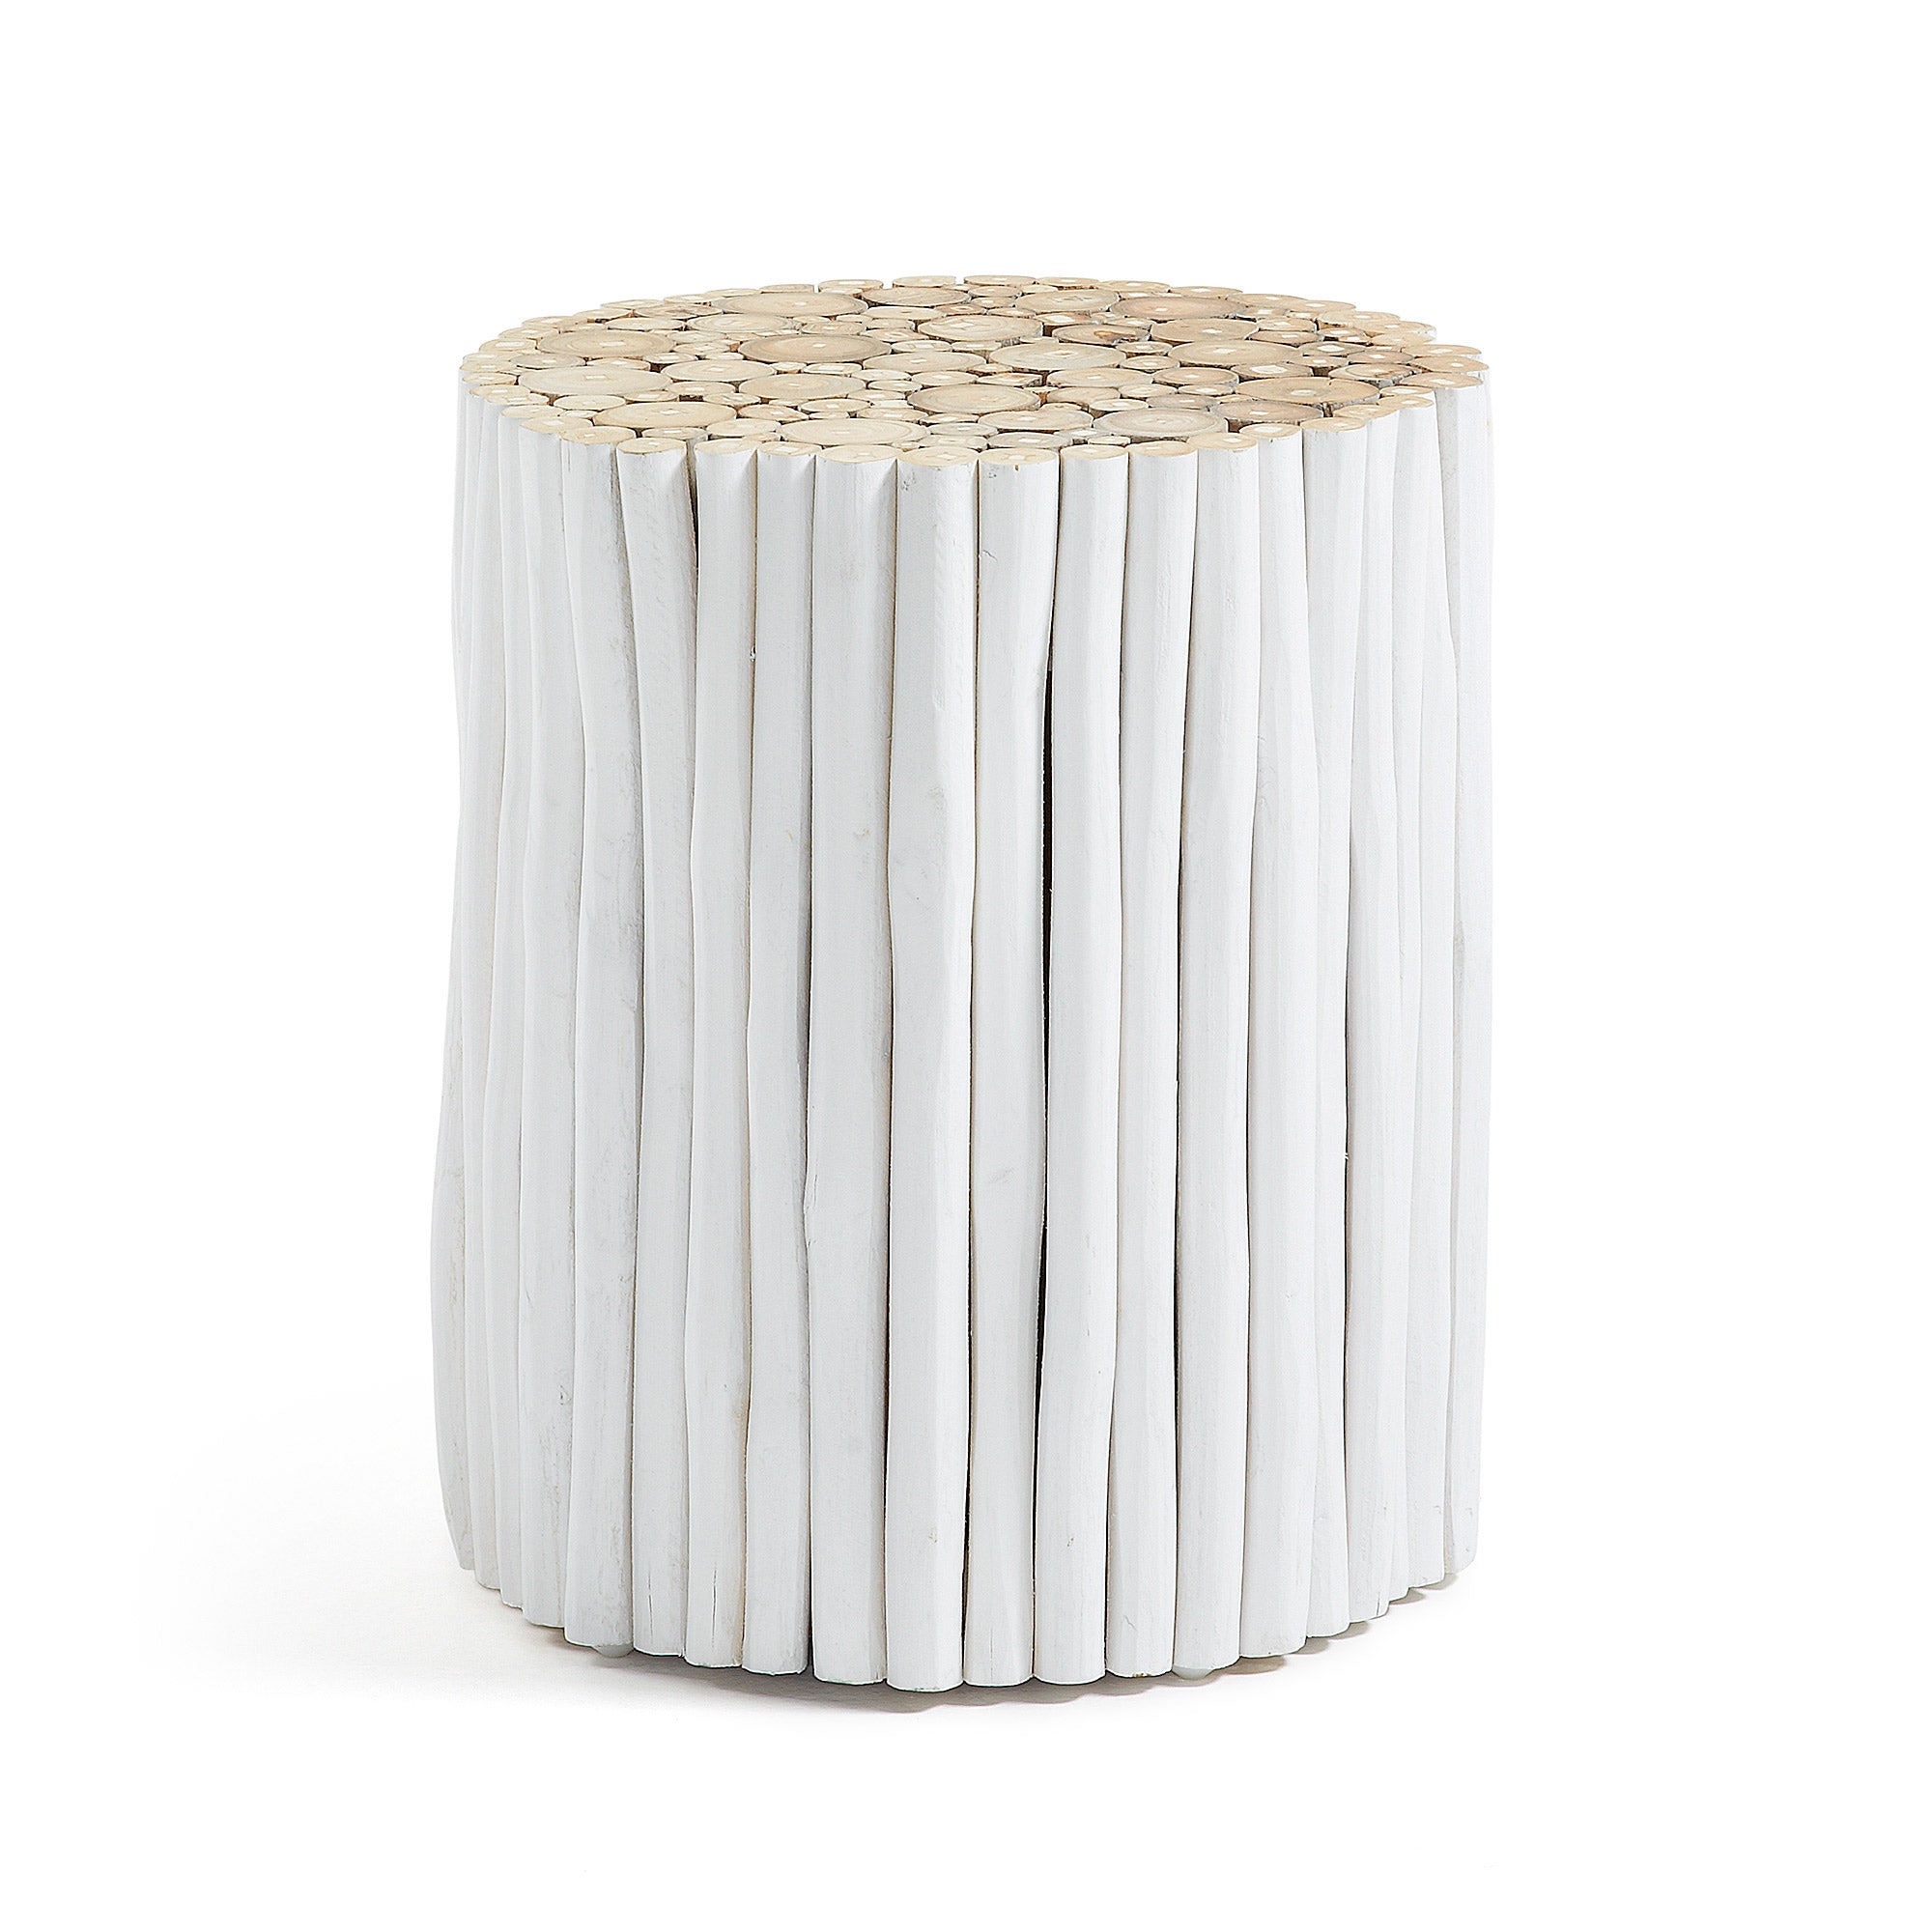 Filip tömör teakfa kisasztal, fehér kivitelben, Ø 35 cm